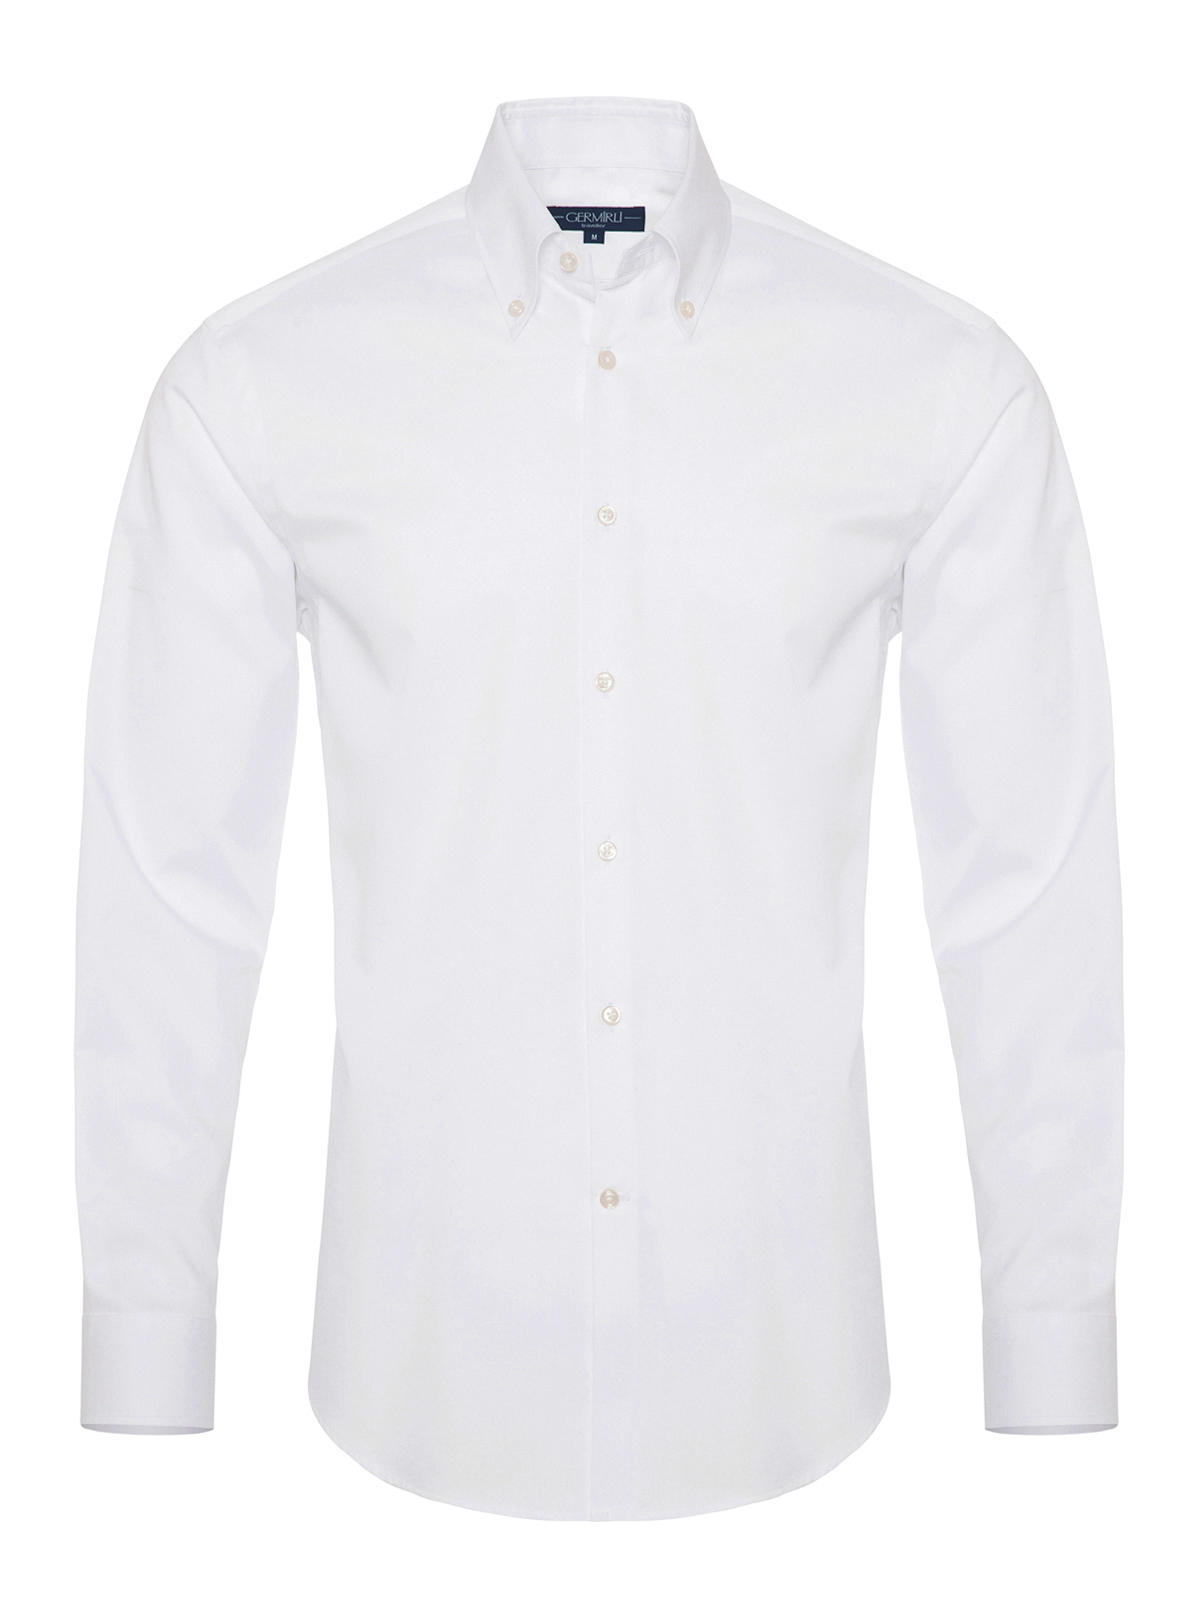 Germirli - Germirli Non Iron White Button Down Collar Tailor Fit Zero 24 Shirt